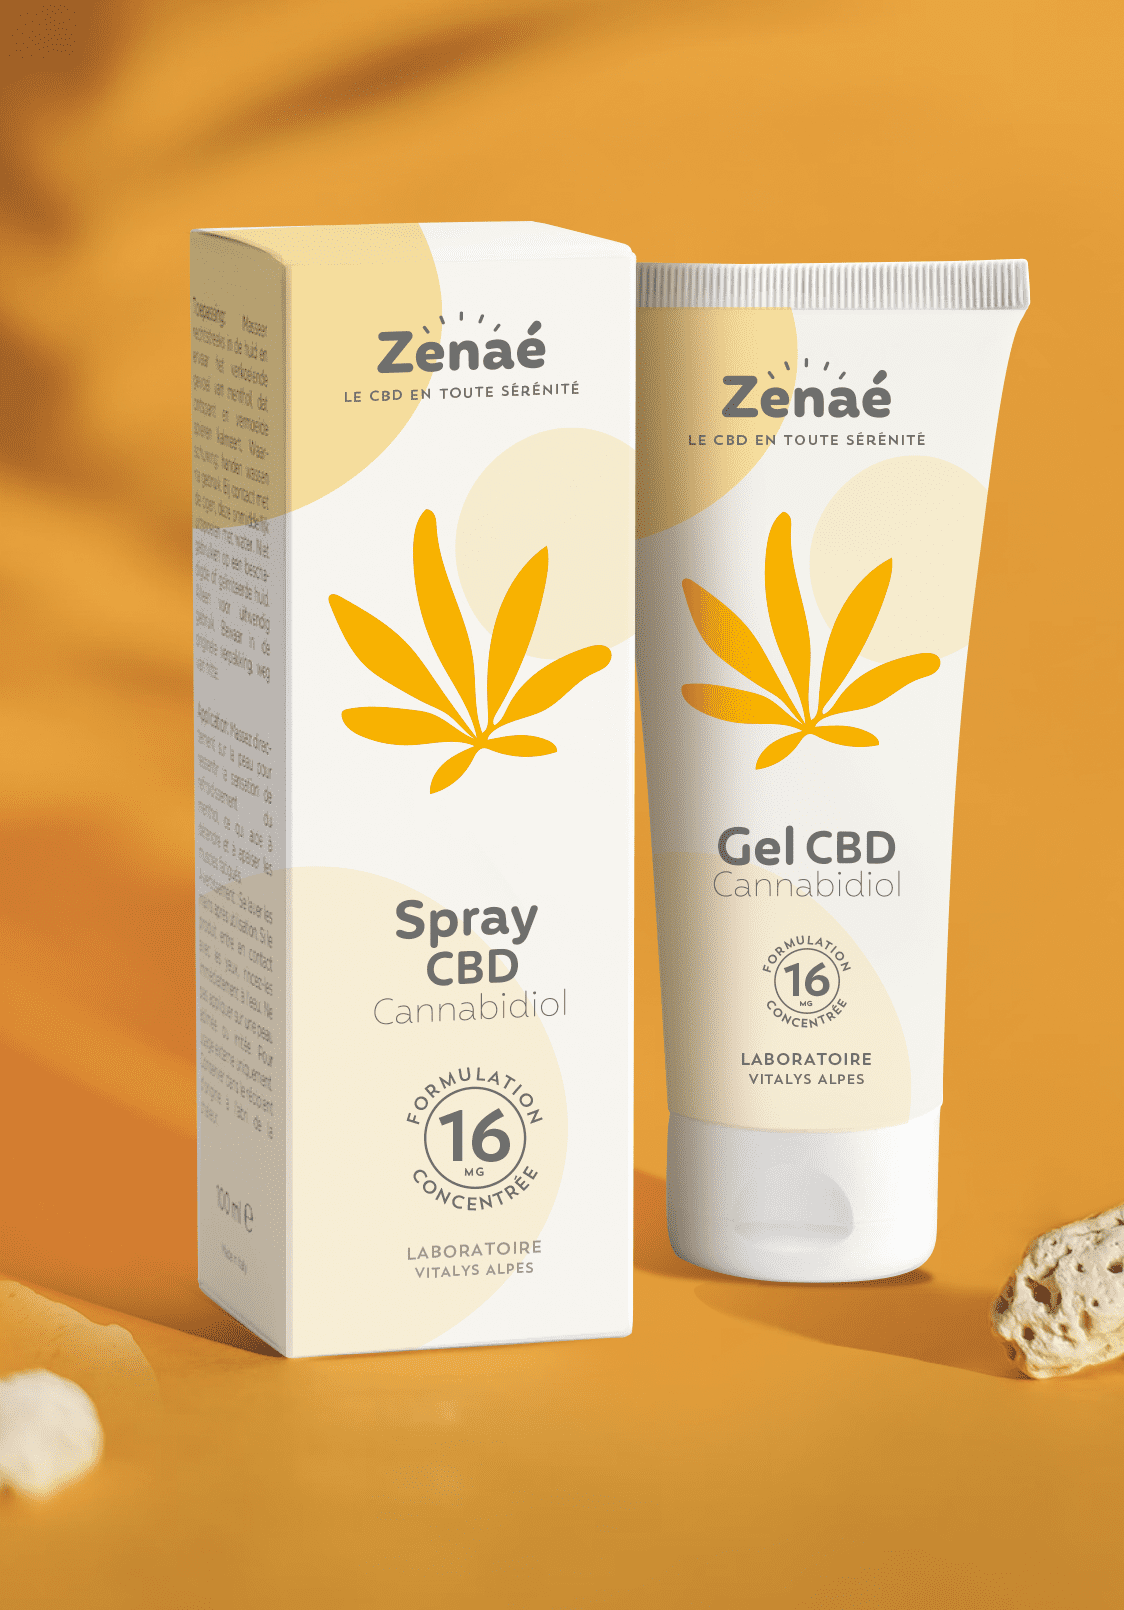 Création packaging Zenaé, feuille de cannabis stylisée orange. Création de marque, branding